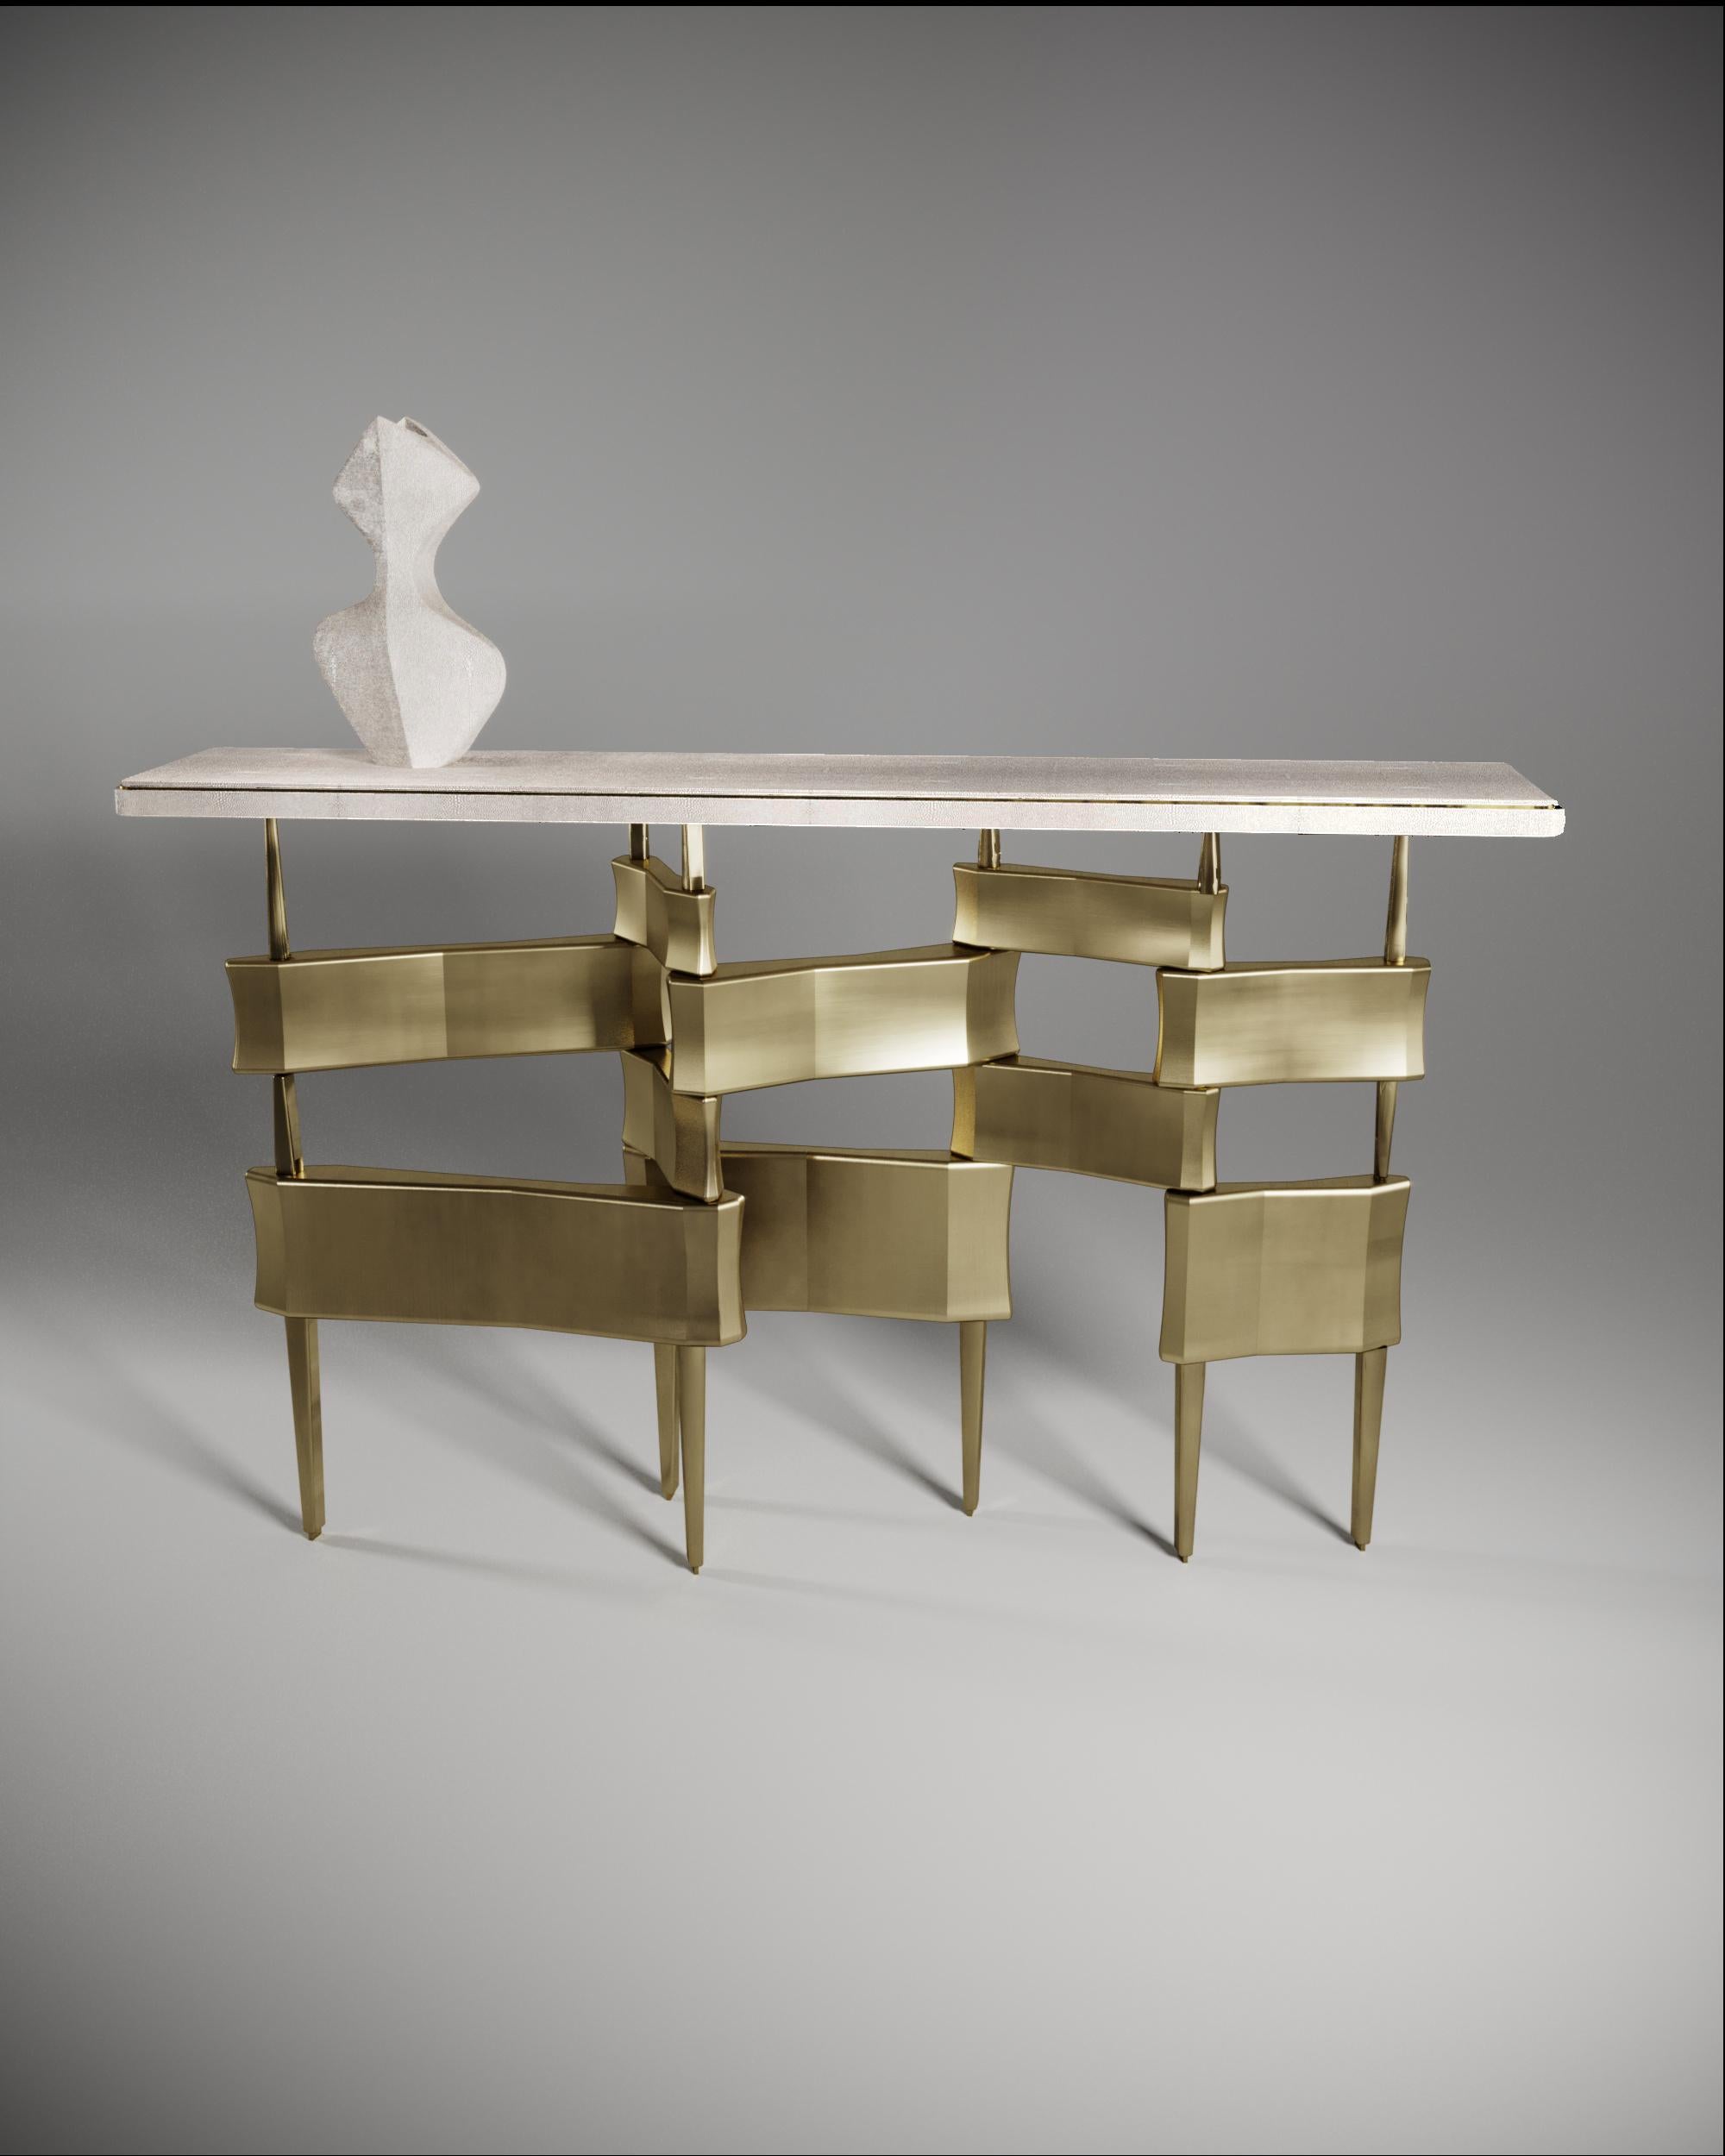 La table console Metropolis de Kifu Paris est un design dramatique et sculptural qui démontre l'incroyable travail artisanal et la signature de ses gènes Augousti. La base de la console, en laiton patiné, s'inspire conceptuellement de la ligne